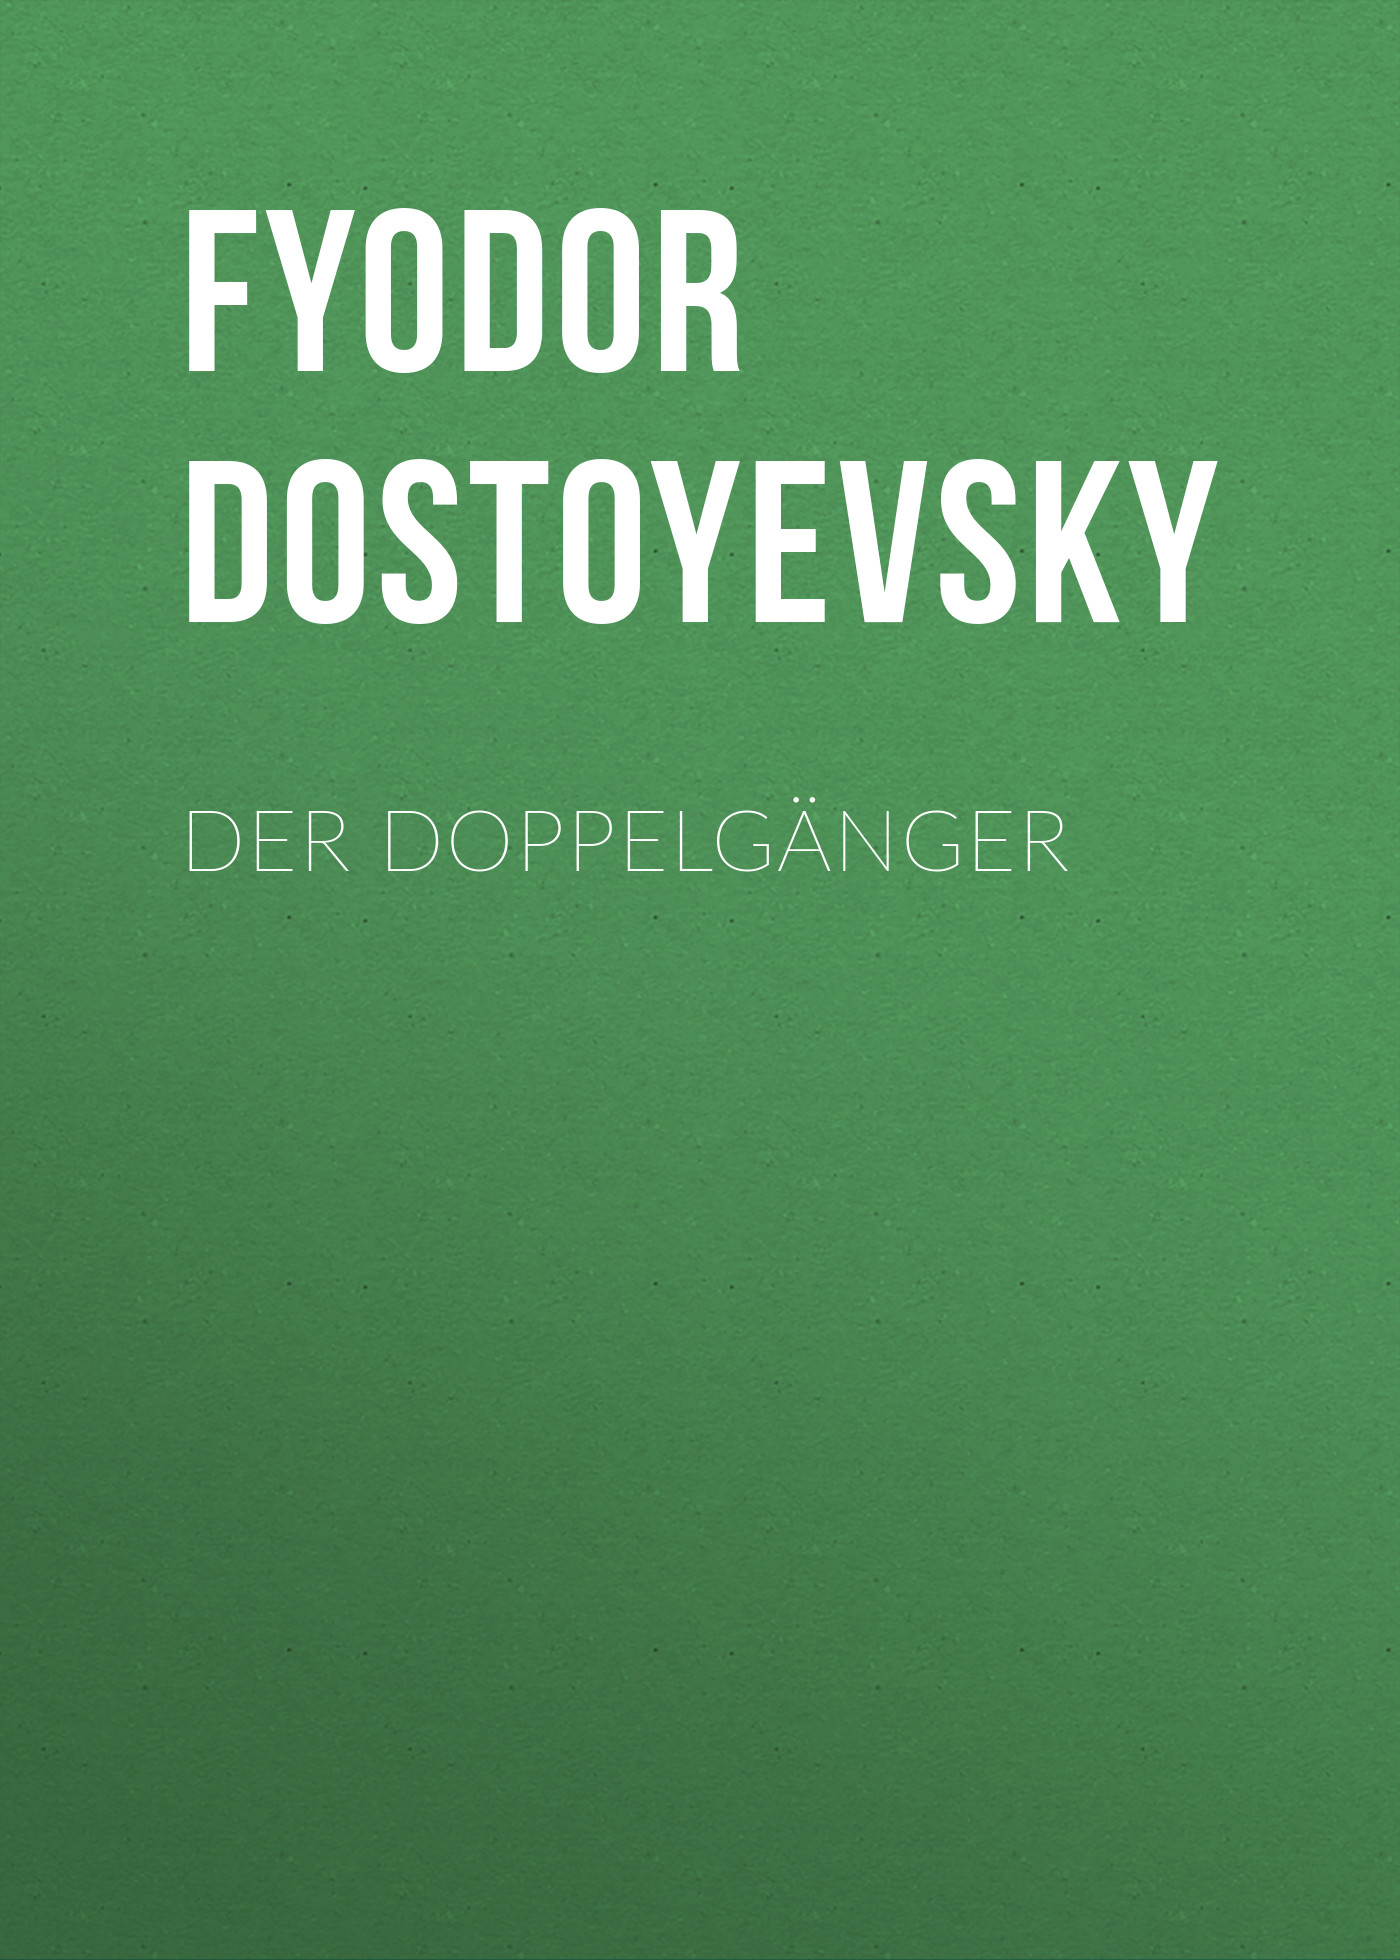 Книга Der Doppelgänger из серии , созданная Fyodor Dostoyevsky, может относится к жанру Зарубежная классика. Стоимость электронной книги Der Doppelgänger с идентификатором 23160115 составляет 5.99 руб.